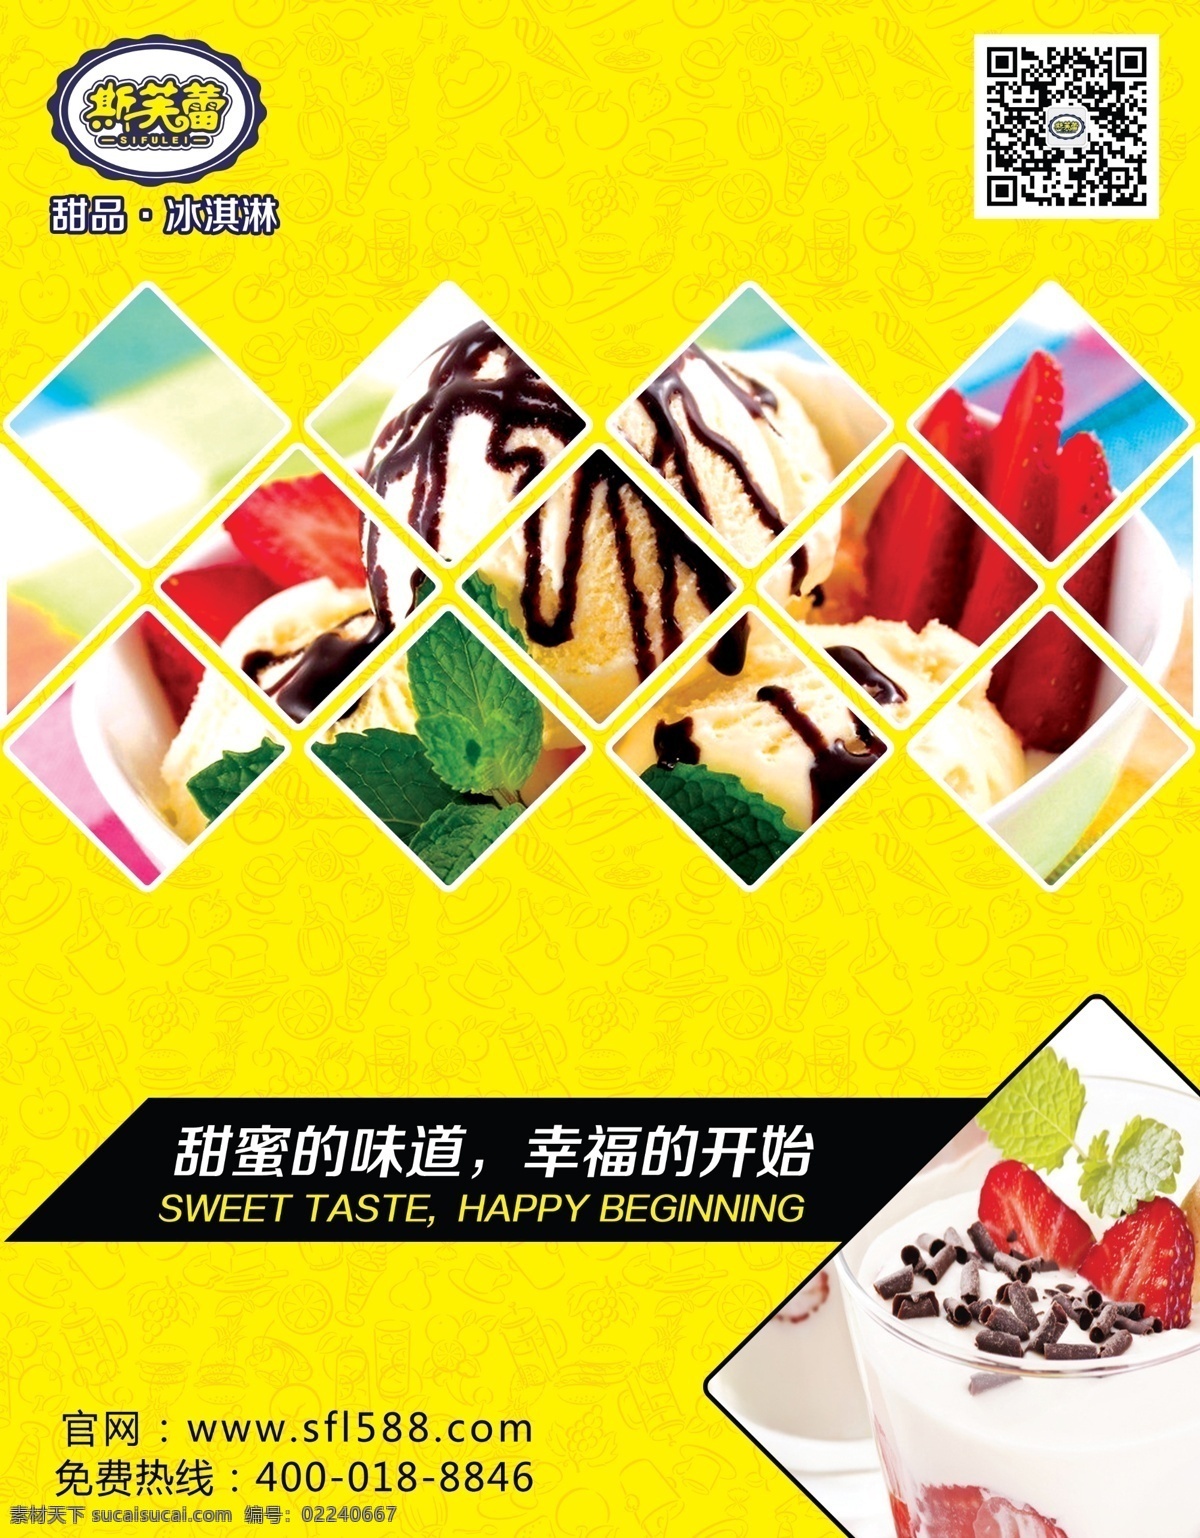 冰淇淋 宣传海报 灯箱 美味 甜品 夏日 小吃 雪糕 硬冰 原创设计 原创海报